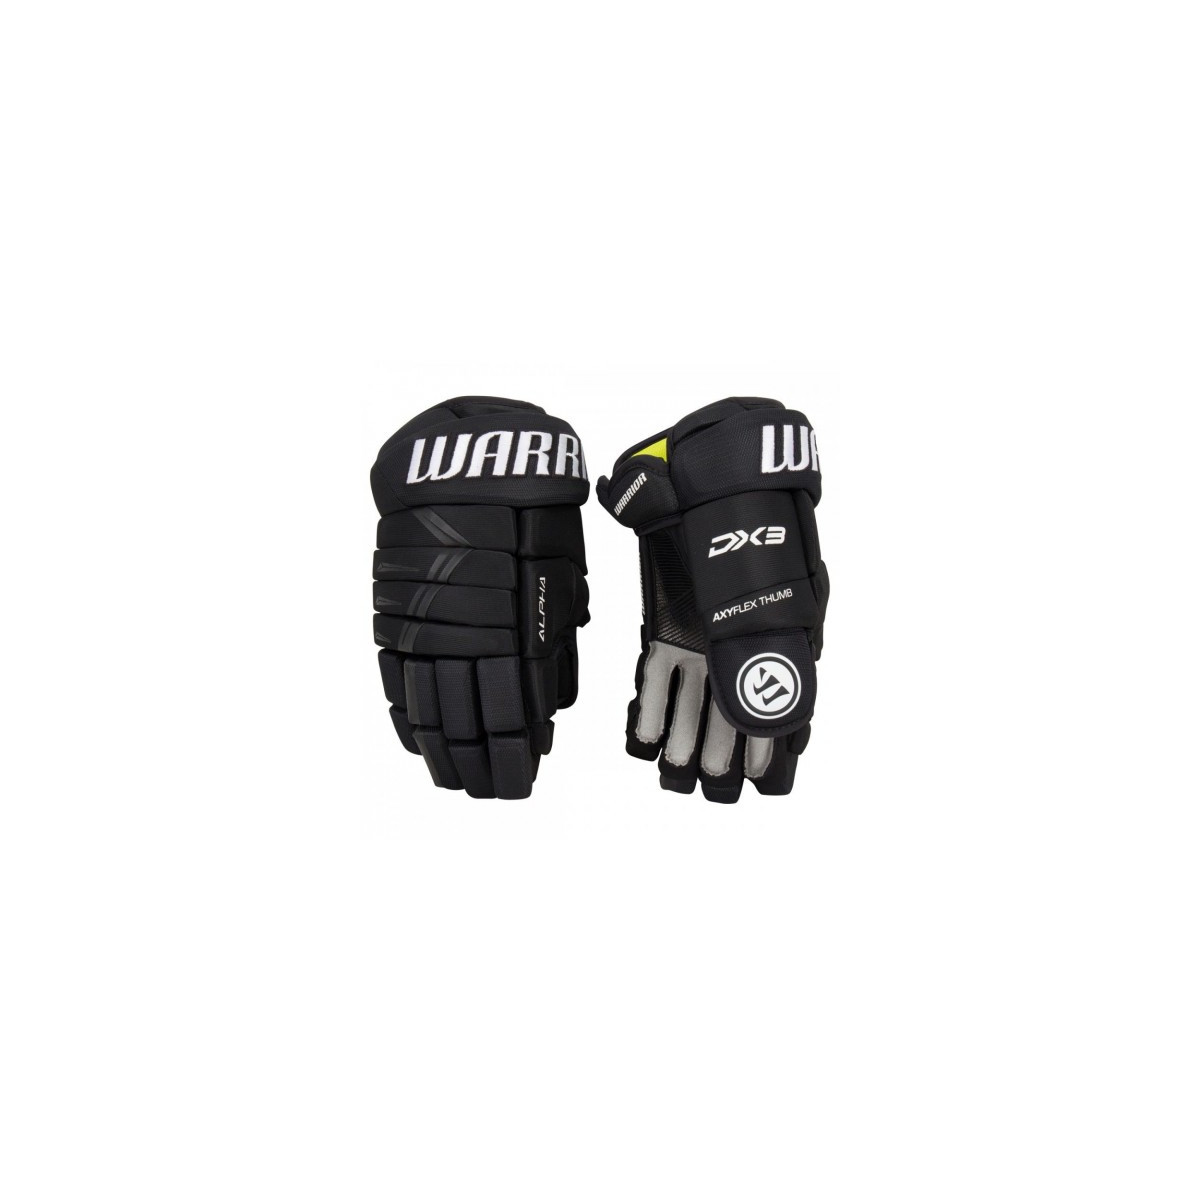 Warrior DX3 Senior Glove